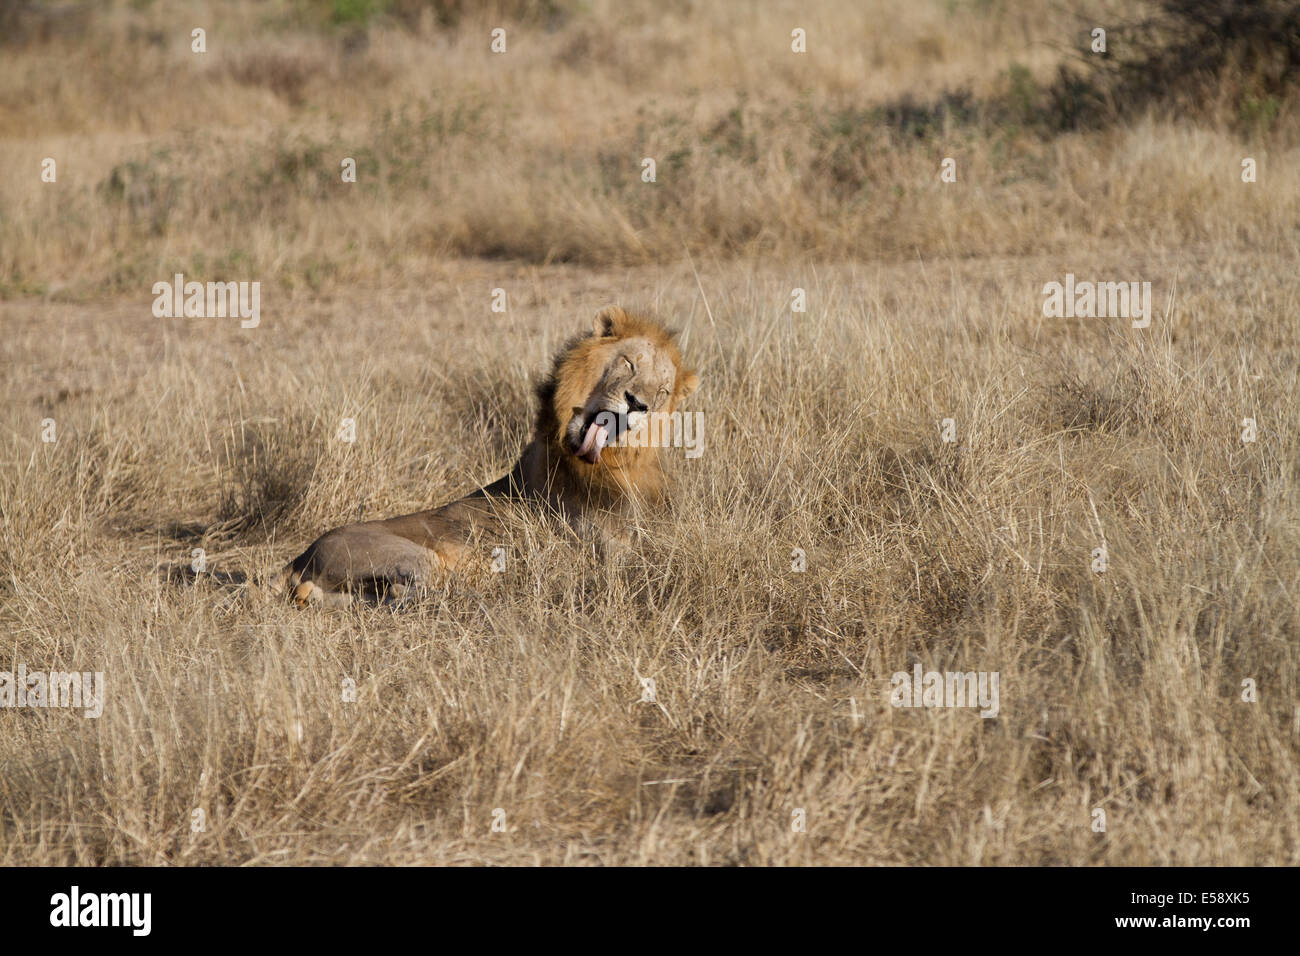 Lion Yawning, Tanzania Stock Photo